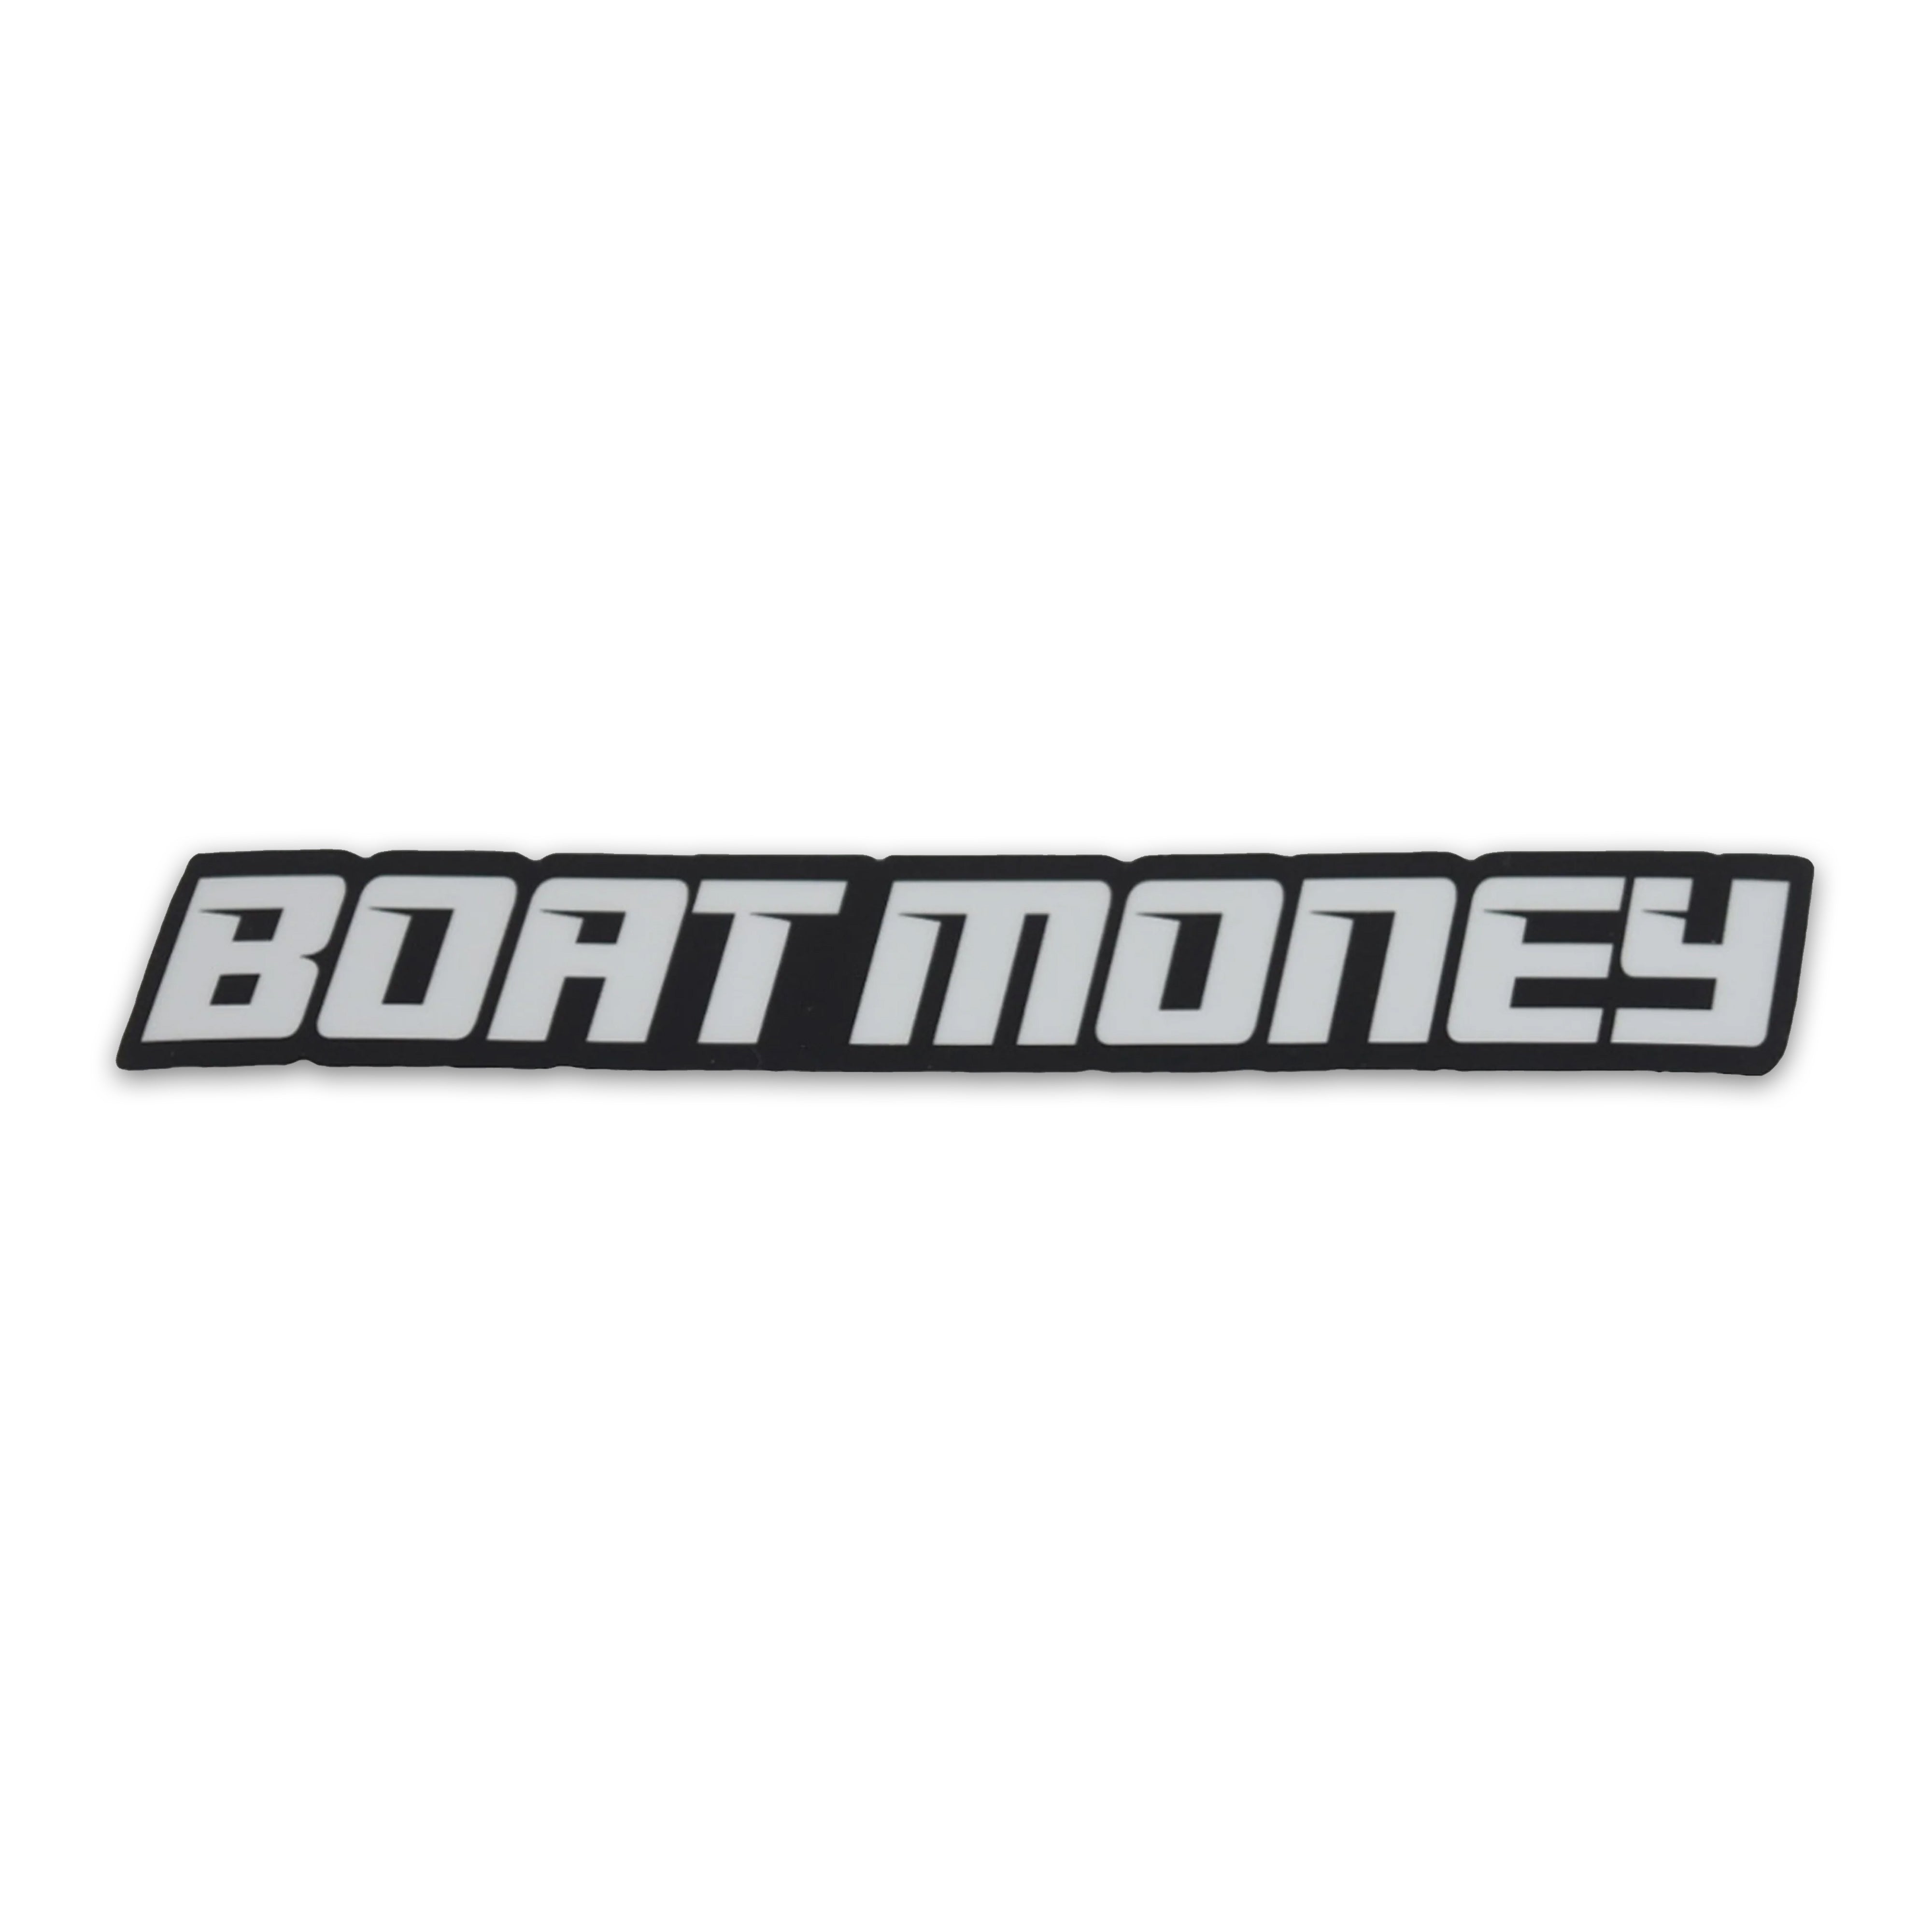 Hondaboats sticker